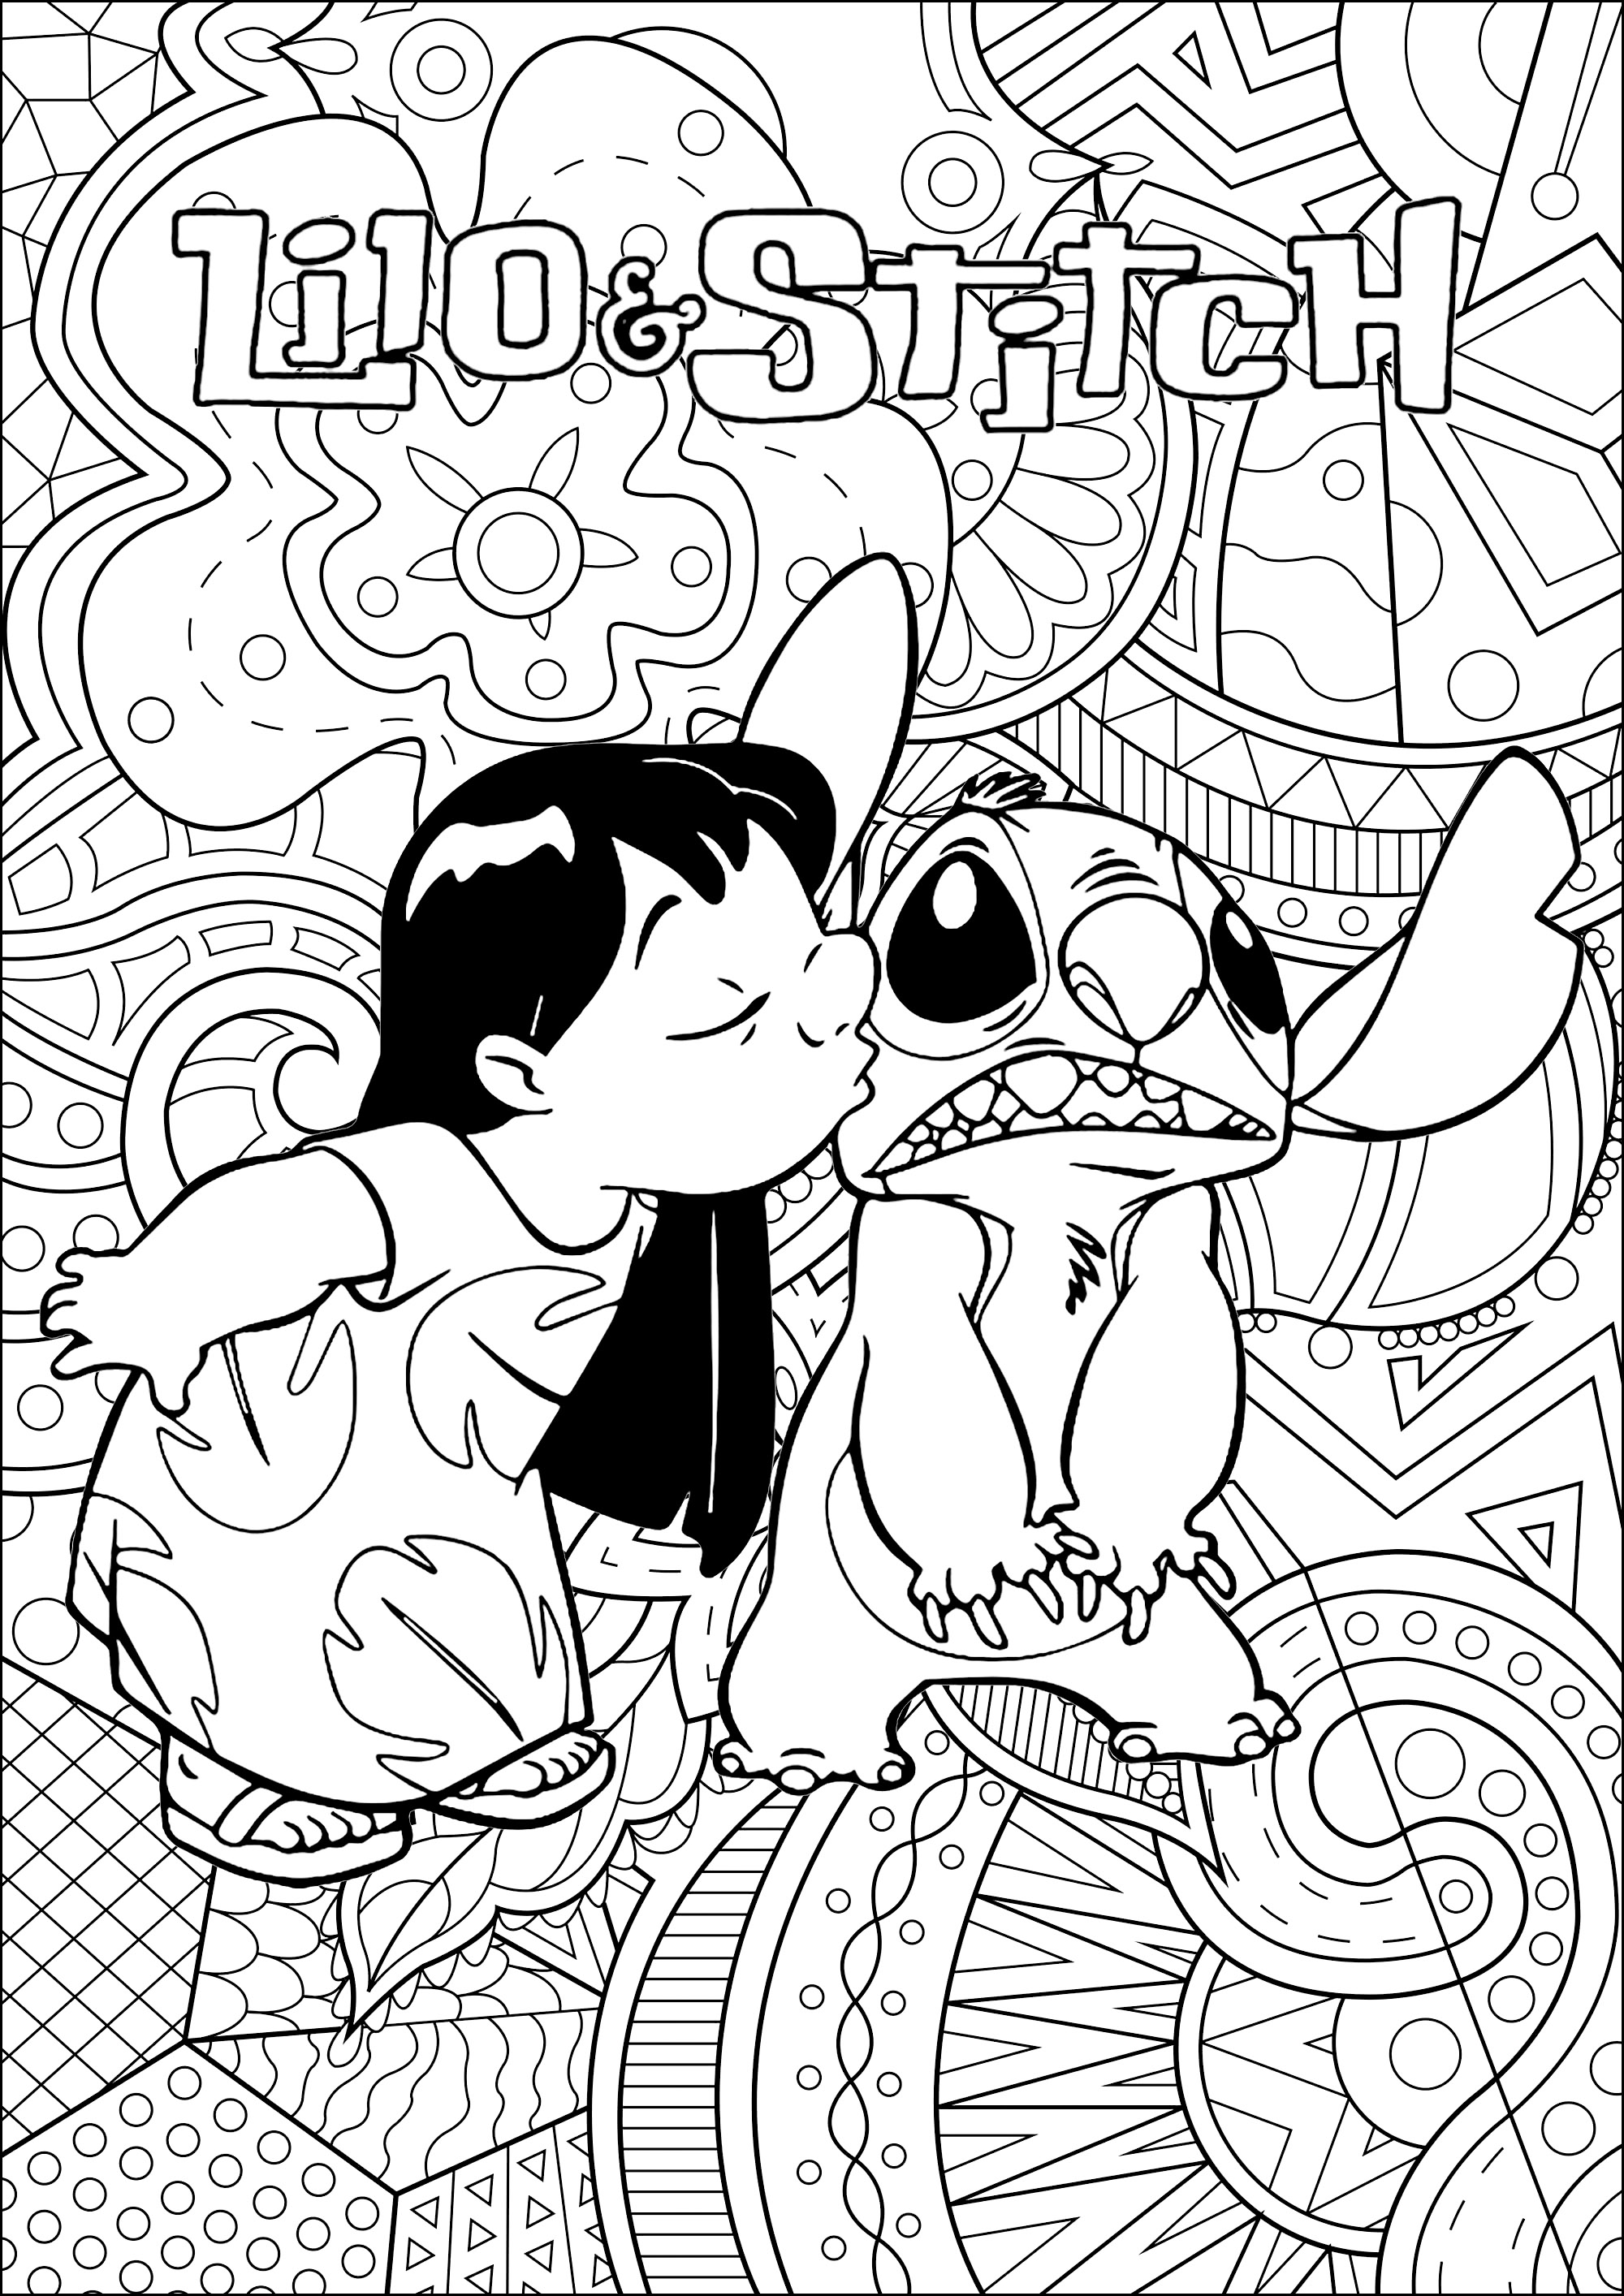 Lilo und Stitch (Disney) Malvorlage mit kompliziertem Hintergrund. Die Geschichte von Lilo und Stitch? Stitch wird auf der Erde angespült, mitten im Pazifik, auf der Insel Hawaii. Der kleine Außerirdische wird bald von Lilo aufgenommen, einem liebenswerten sechsjährigen Mädchen, das ihn für einen ausgesetzten Hund hält ...